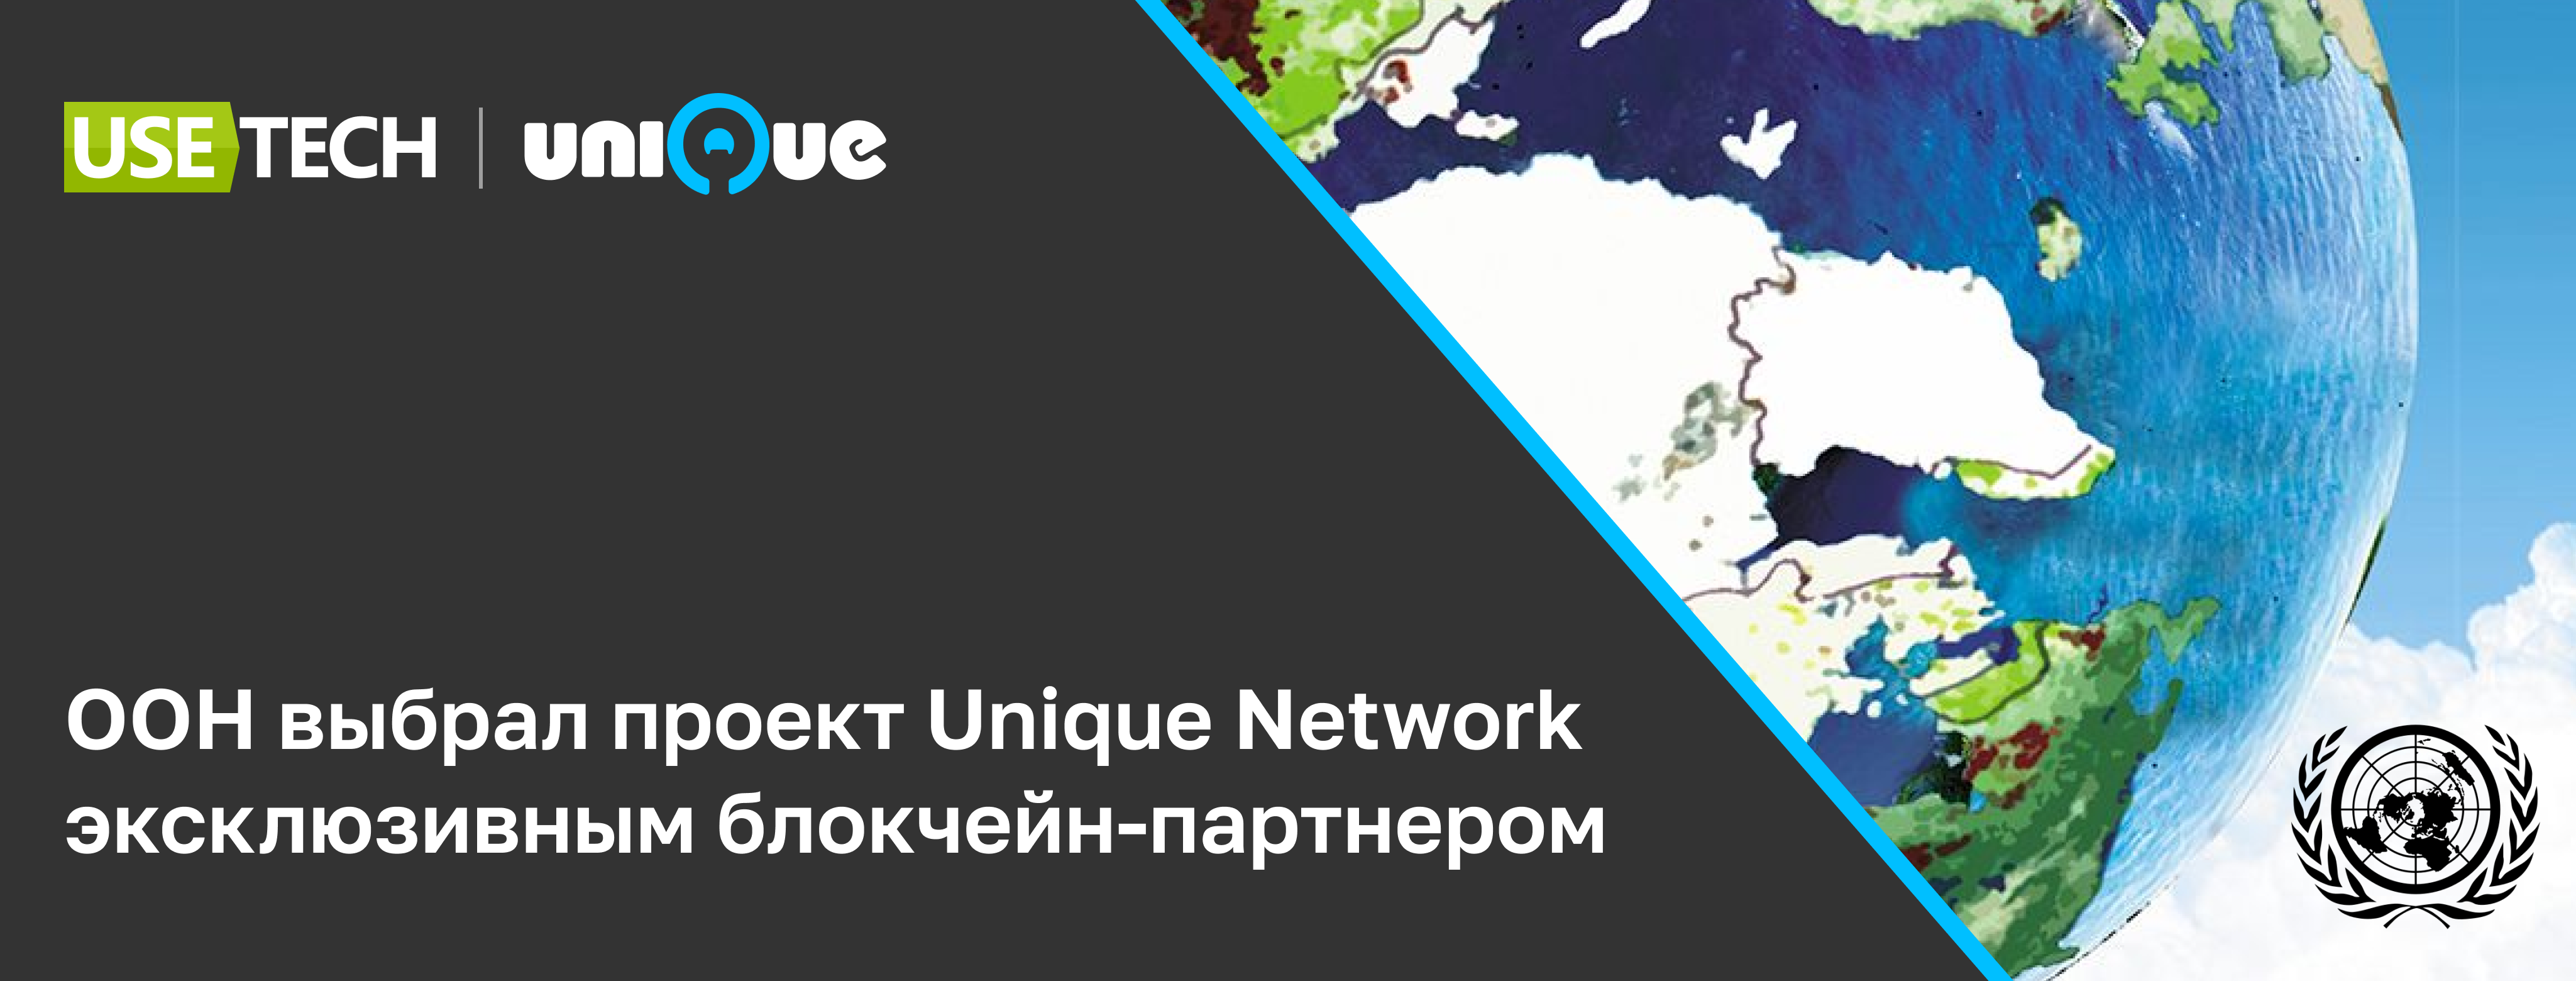 фото: Unique Network, платформа компании Usetech, выбран эксклюзивным блокчейн-партнером для реализации NFT в рамках инициативы по климату, при поддержке ООН